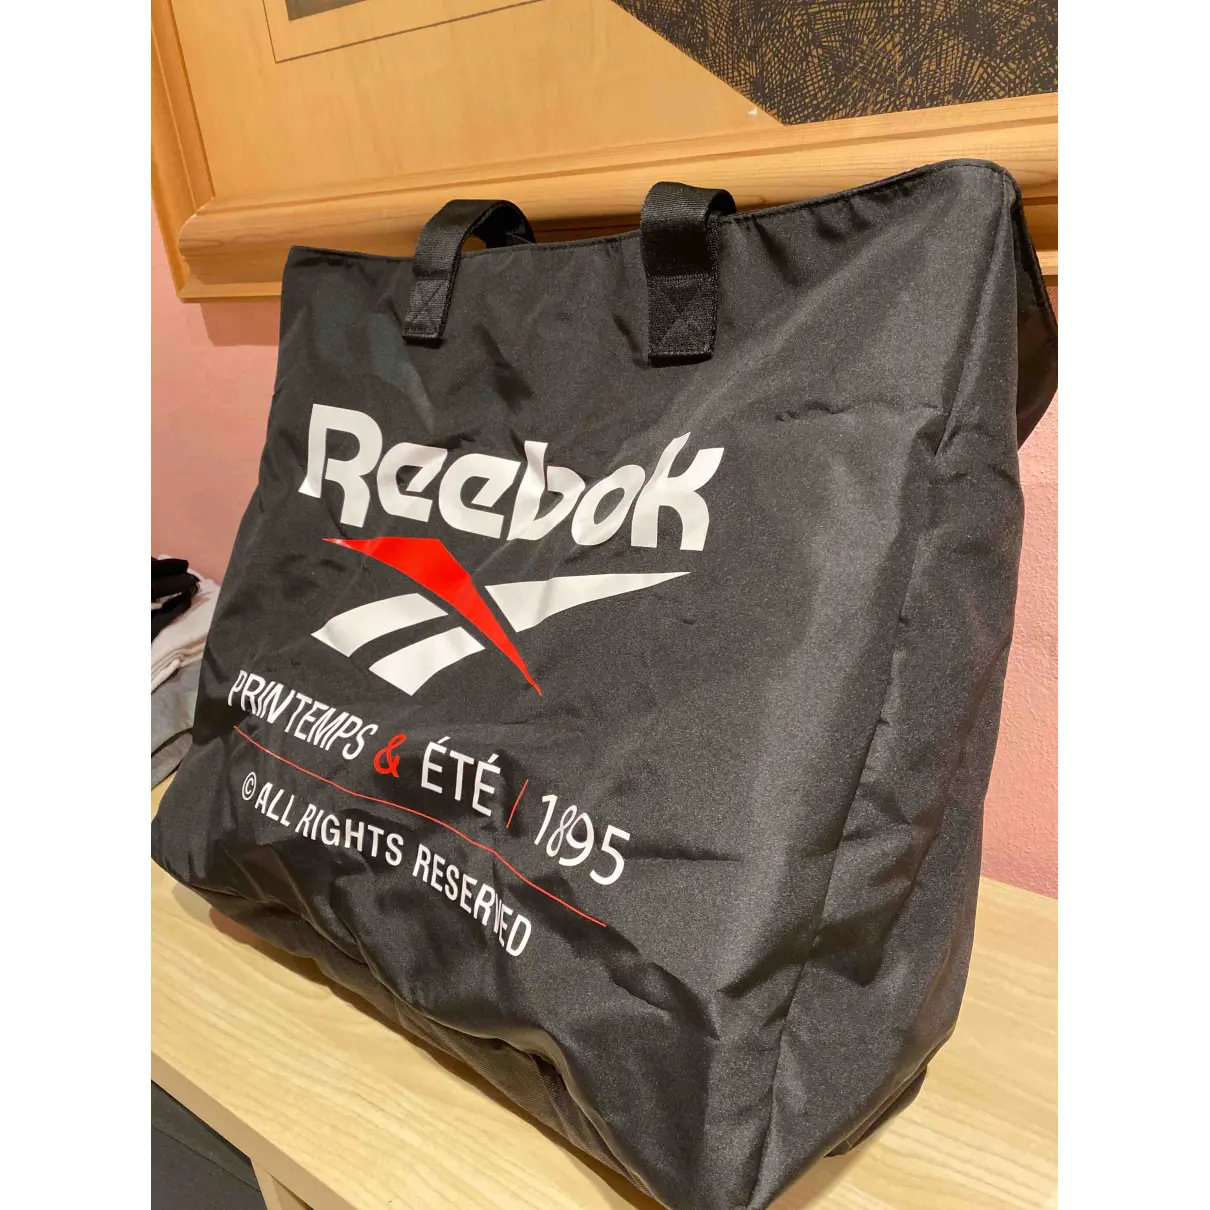 Buy Reebok Bag online